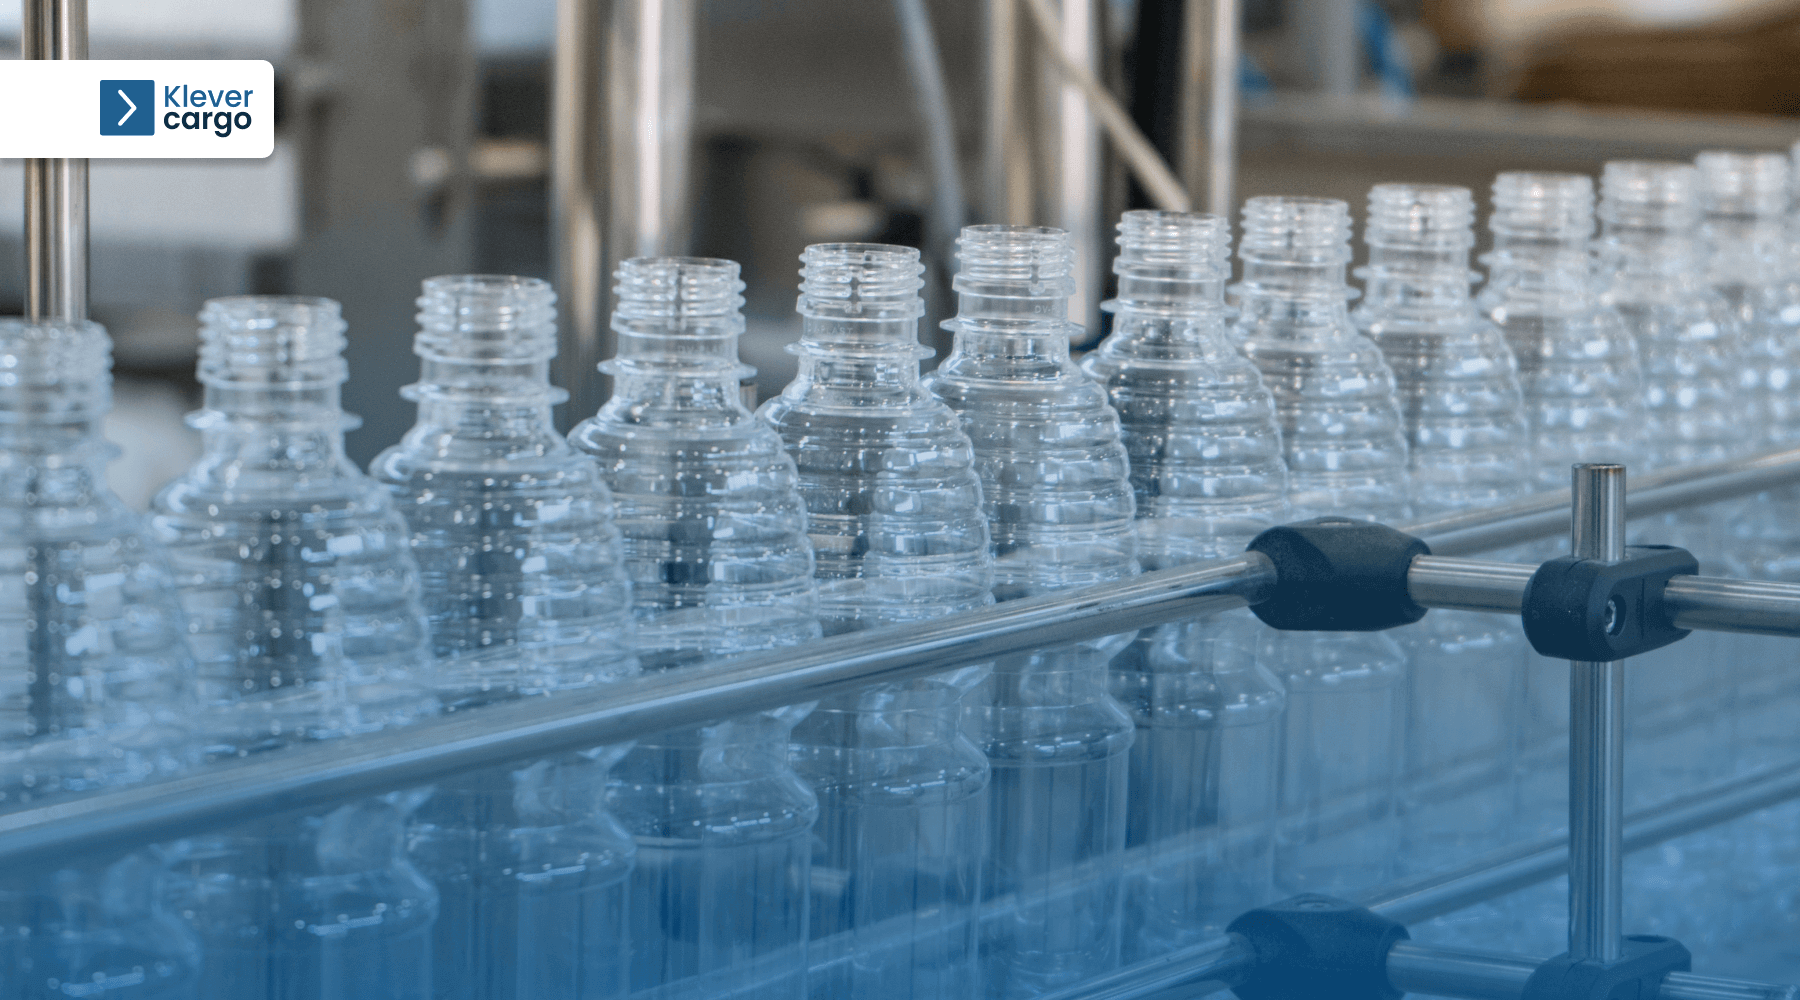 plastic bottles manufacture materials